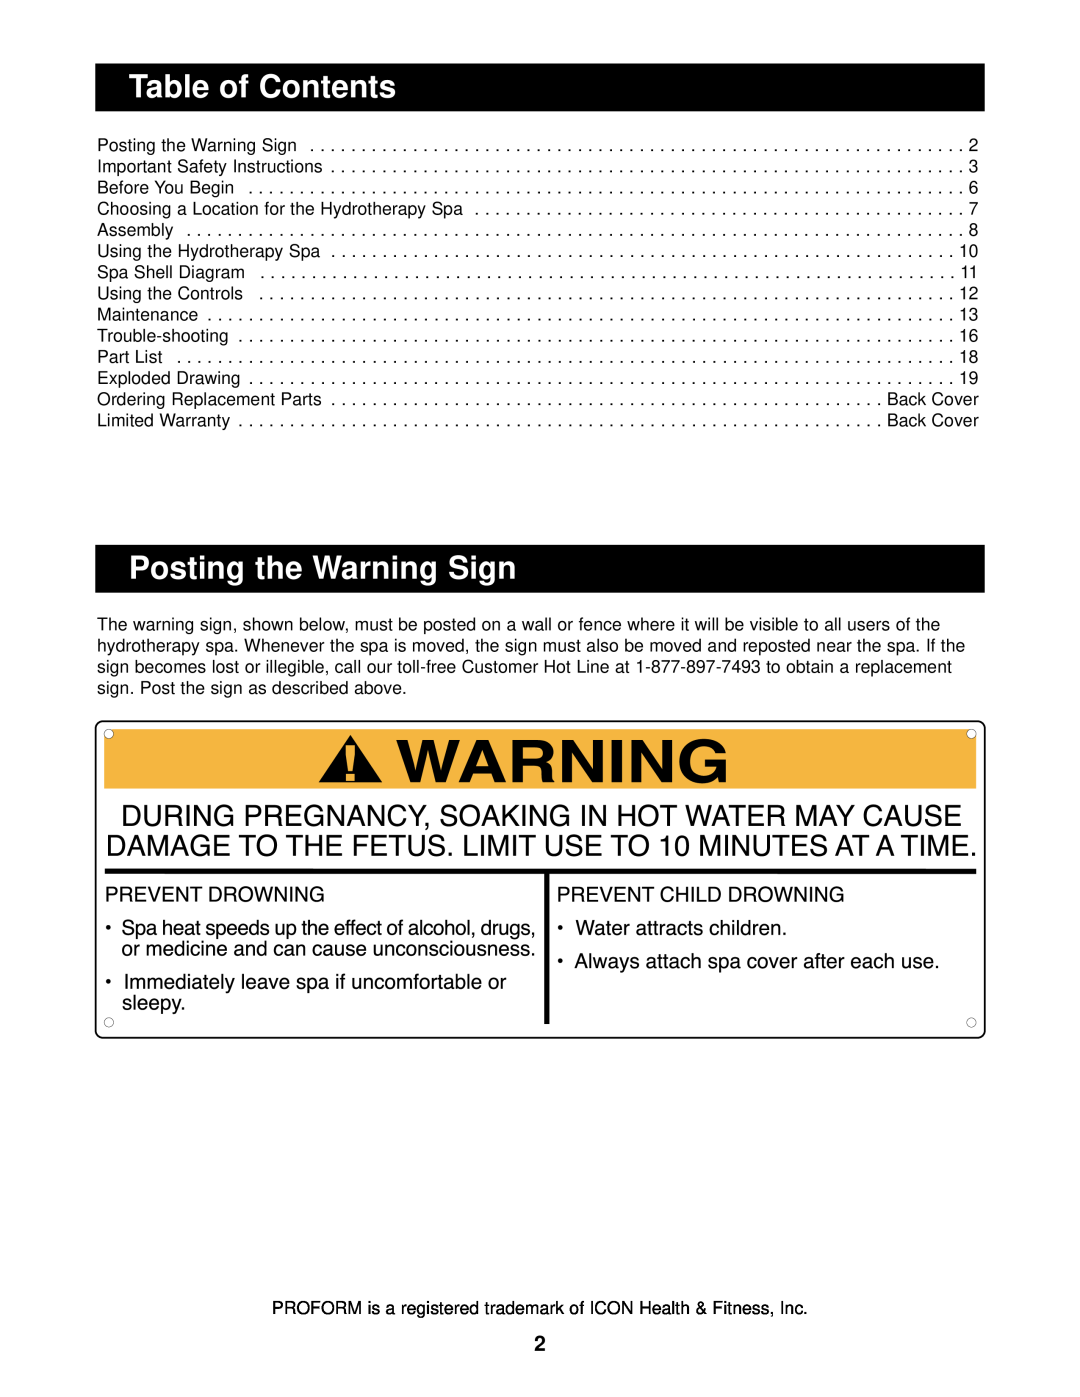 ProForm PFSW73900, PFSB73900, PFSG73900, PFSW73900, PFSB73900, PFG73900 Table of Contents, Posting the Warning Sign 